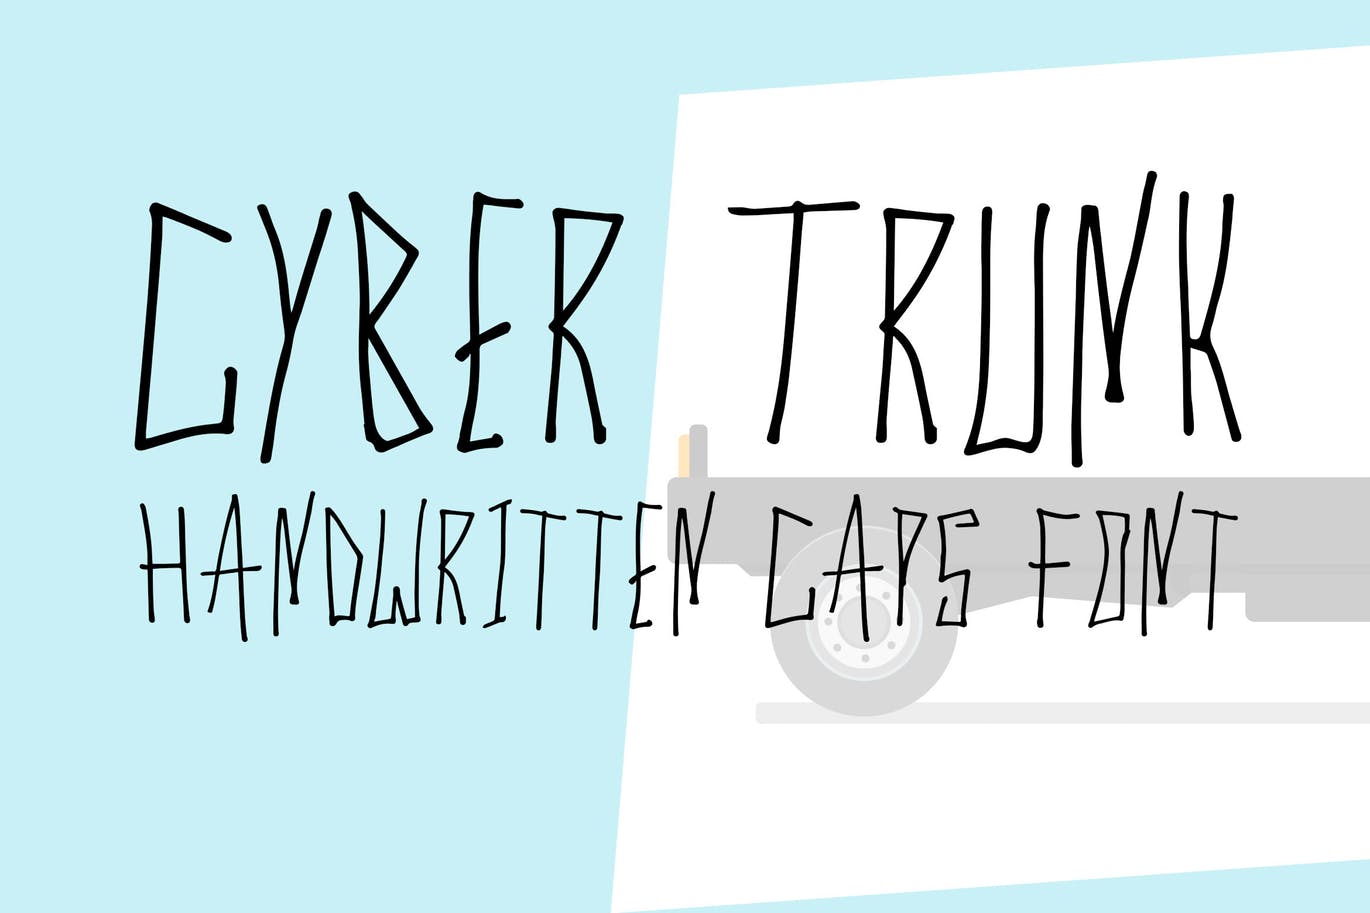 独特笔画创意英文手写字体 Cyber Trunk – Handwritten Font设计素材模板